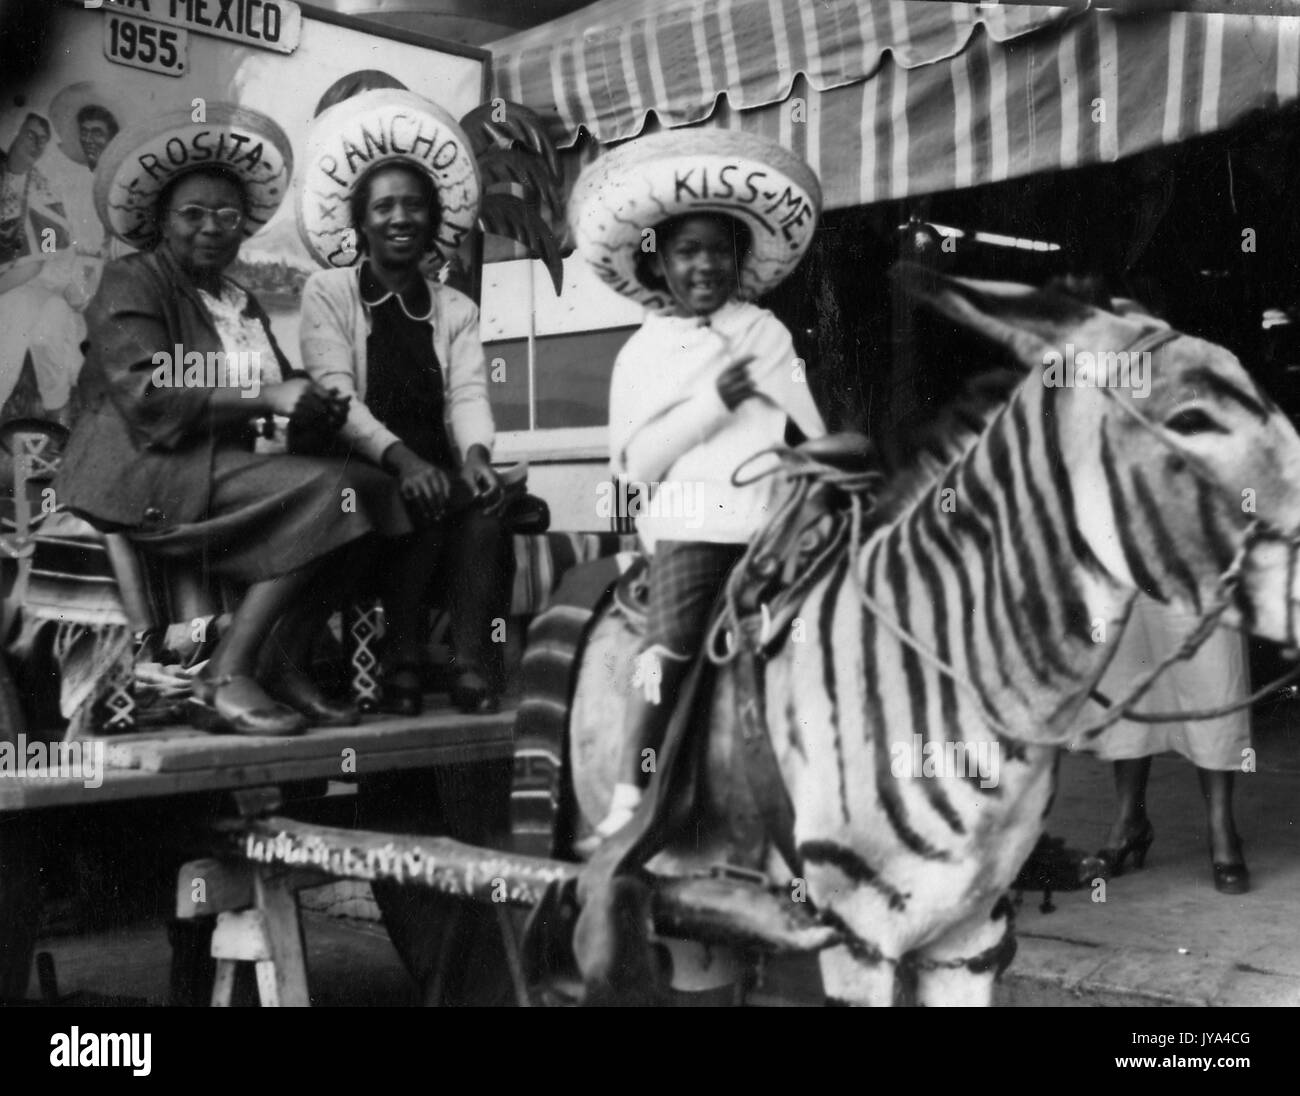 Afrikanische amerikanische Familie in Mexiko, zwei Frauen sitzen auf einem Wagen, junges Kind reiten einen Esel, lackiert ist, sich wie ein Zebra Look, alle tragen Sombreros, 1955. Stockfoto